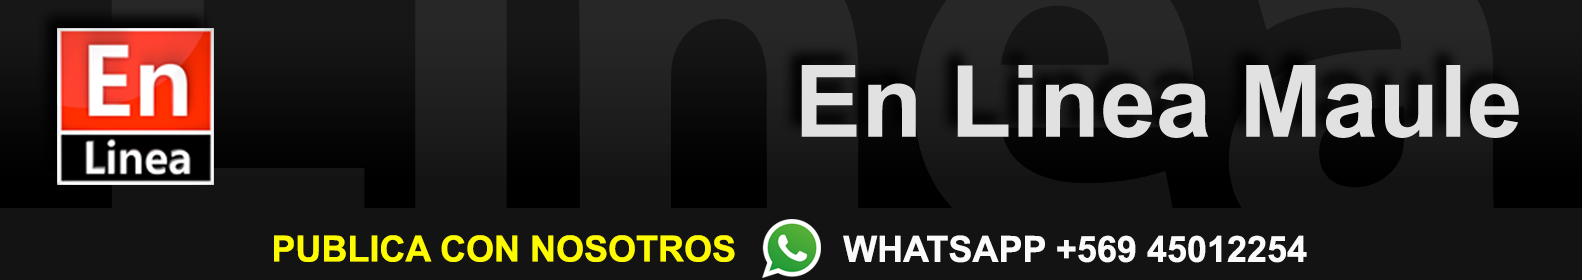 Whatsapp ya tiene dispoinible el servicio de videollamadas | En Línea Maule